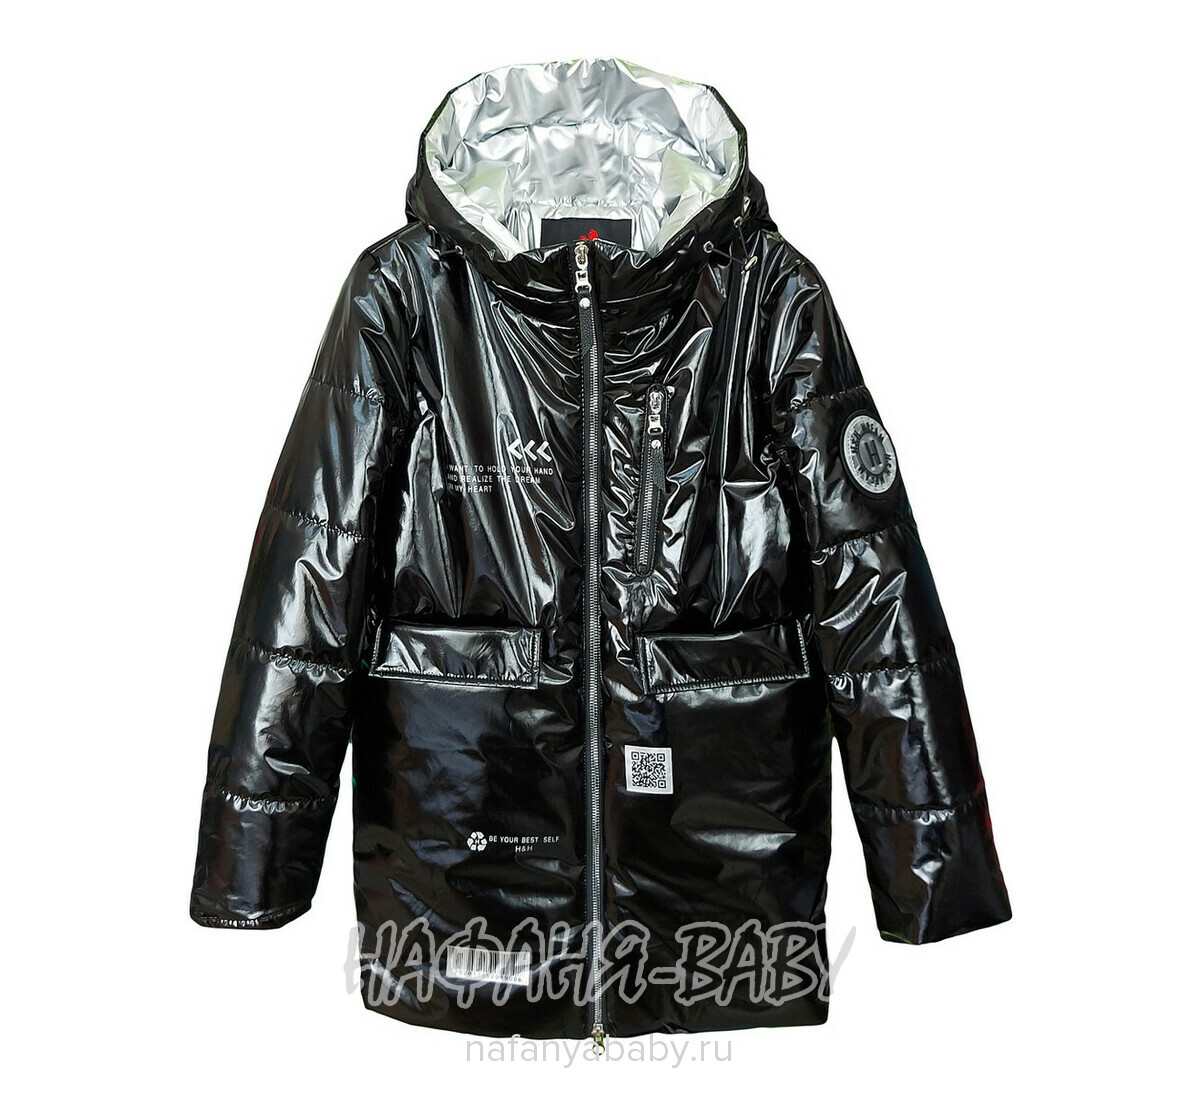 Подростковая демисезонная куртка SANMAO арт: 216, 10-15 лет, 5-9 лет, оптом Китай (Пекин)